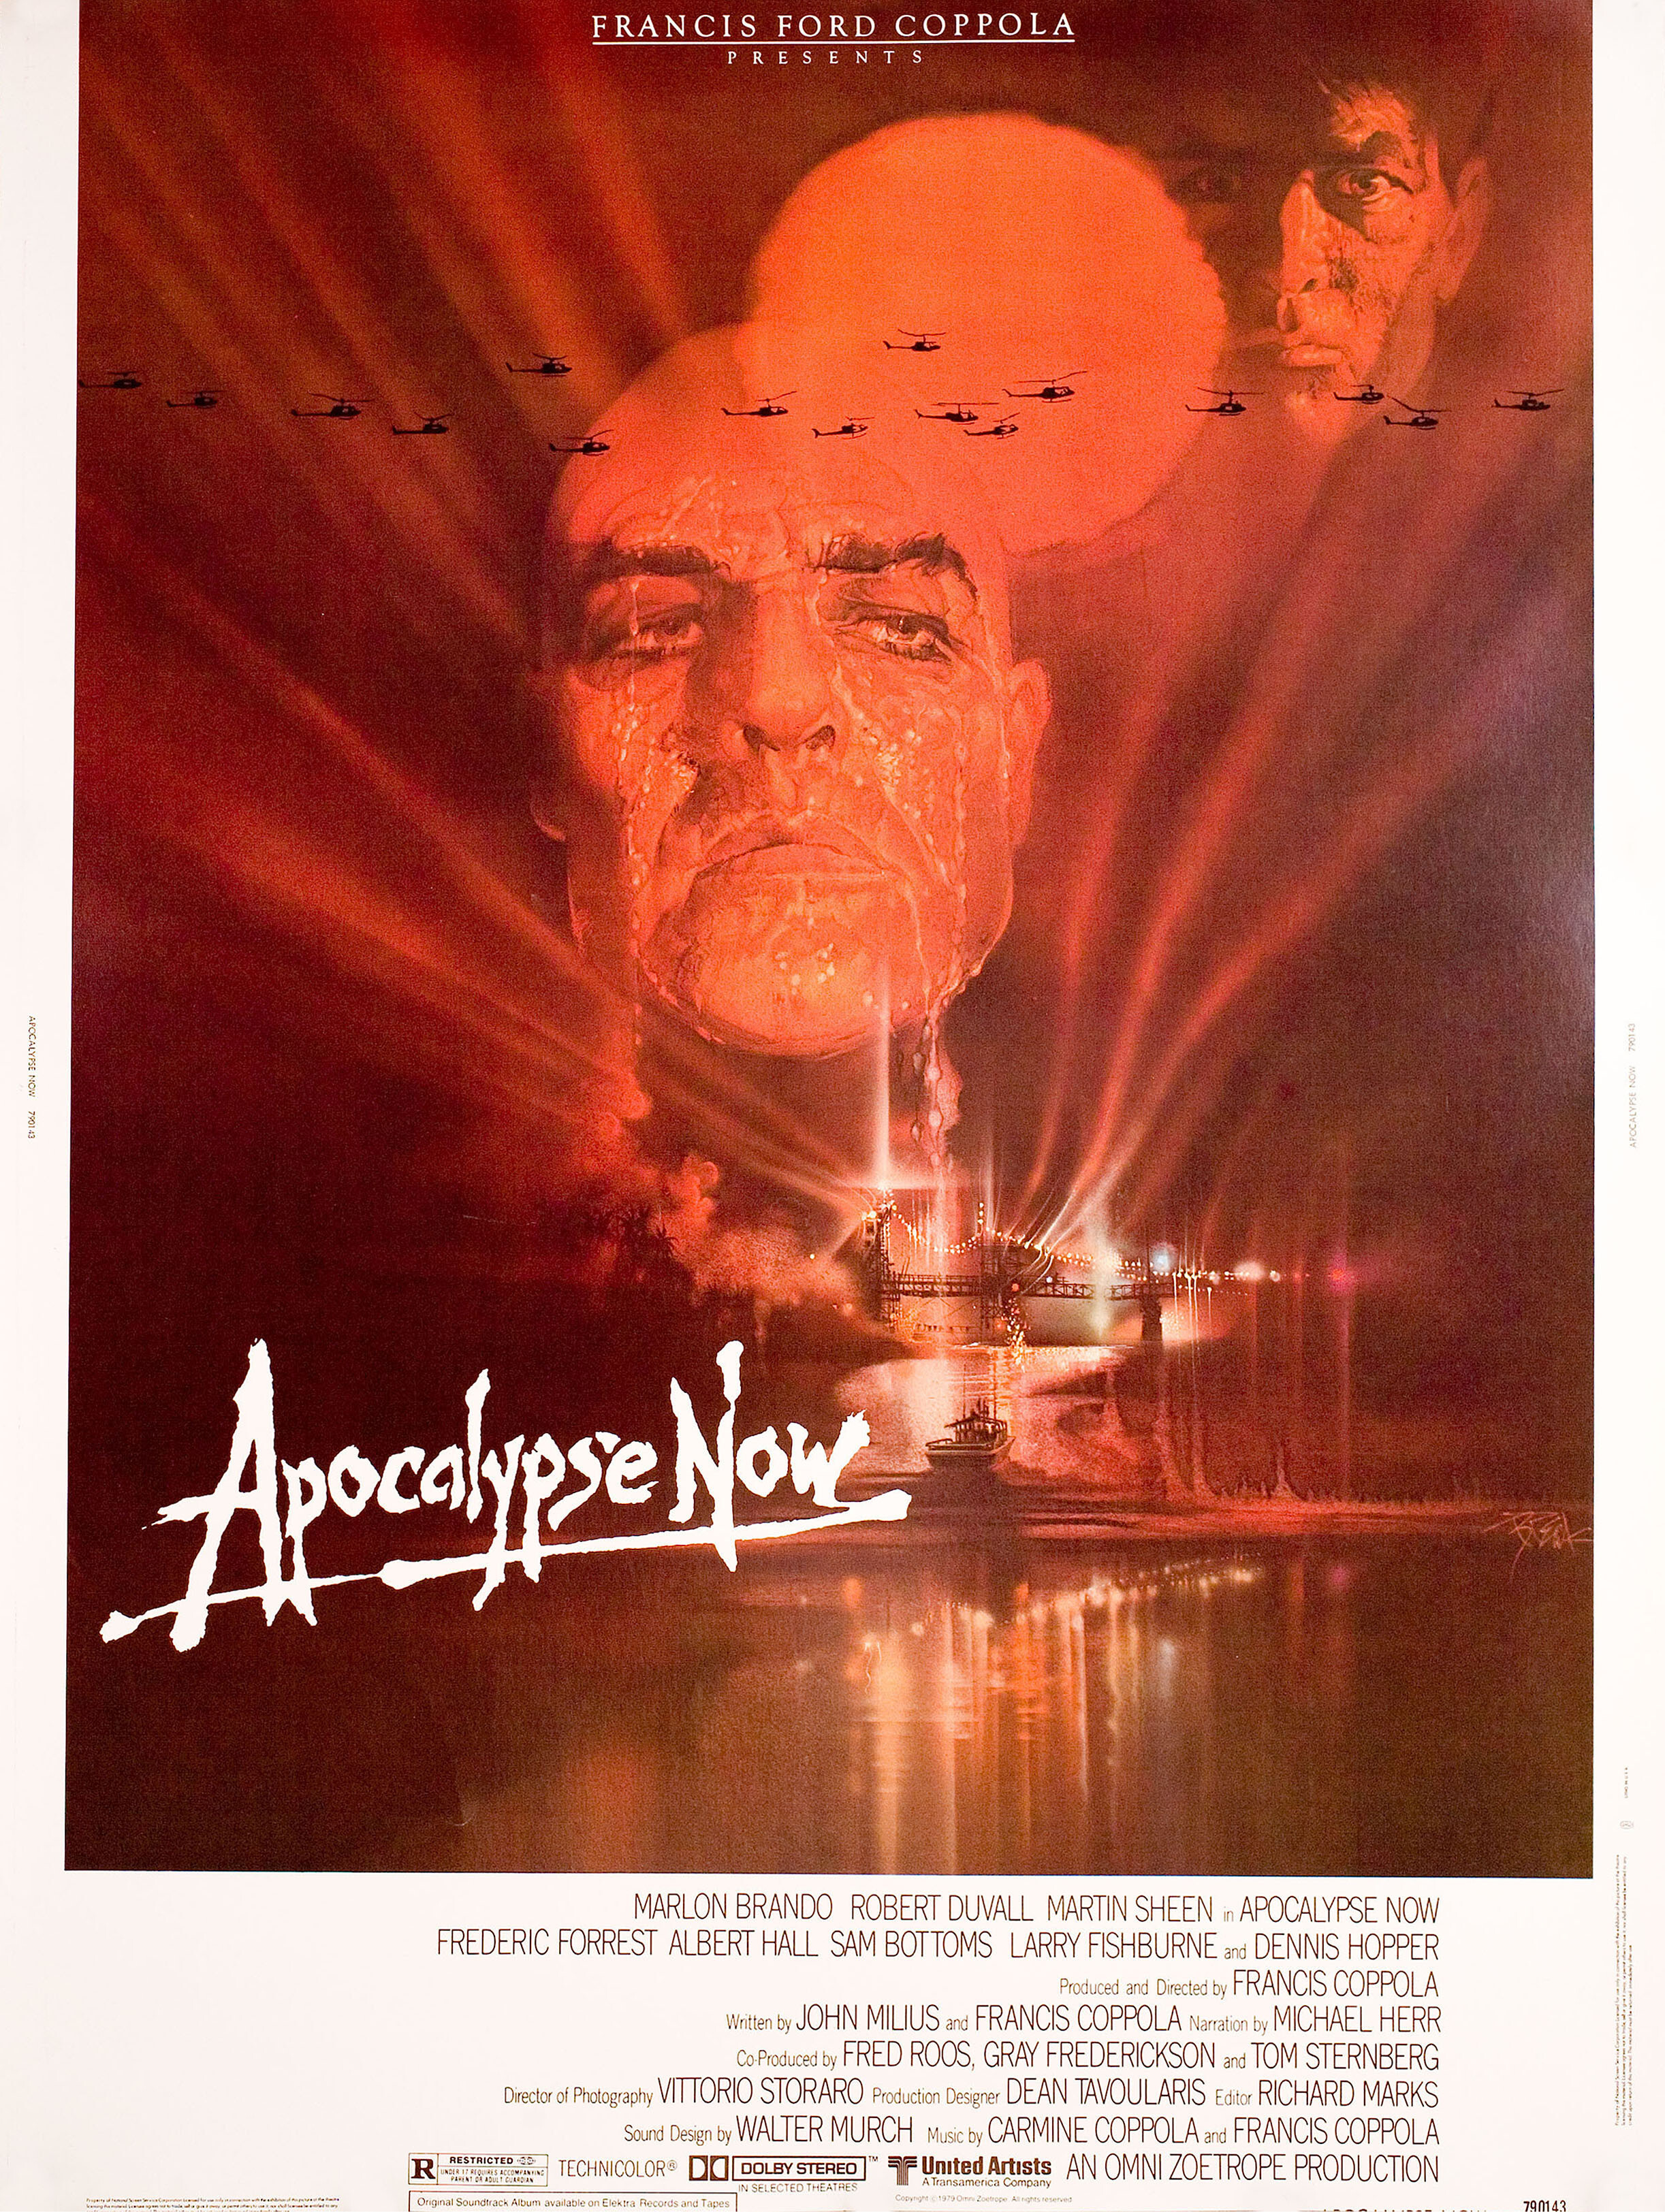 Апокалипсис сегодня (Apocalypse Now, 1979), режиссёр Фрэнсис Форд Коппола, иллюстрированный постер к фильму (США, 1979 год), автор Боб Пик_1